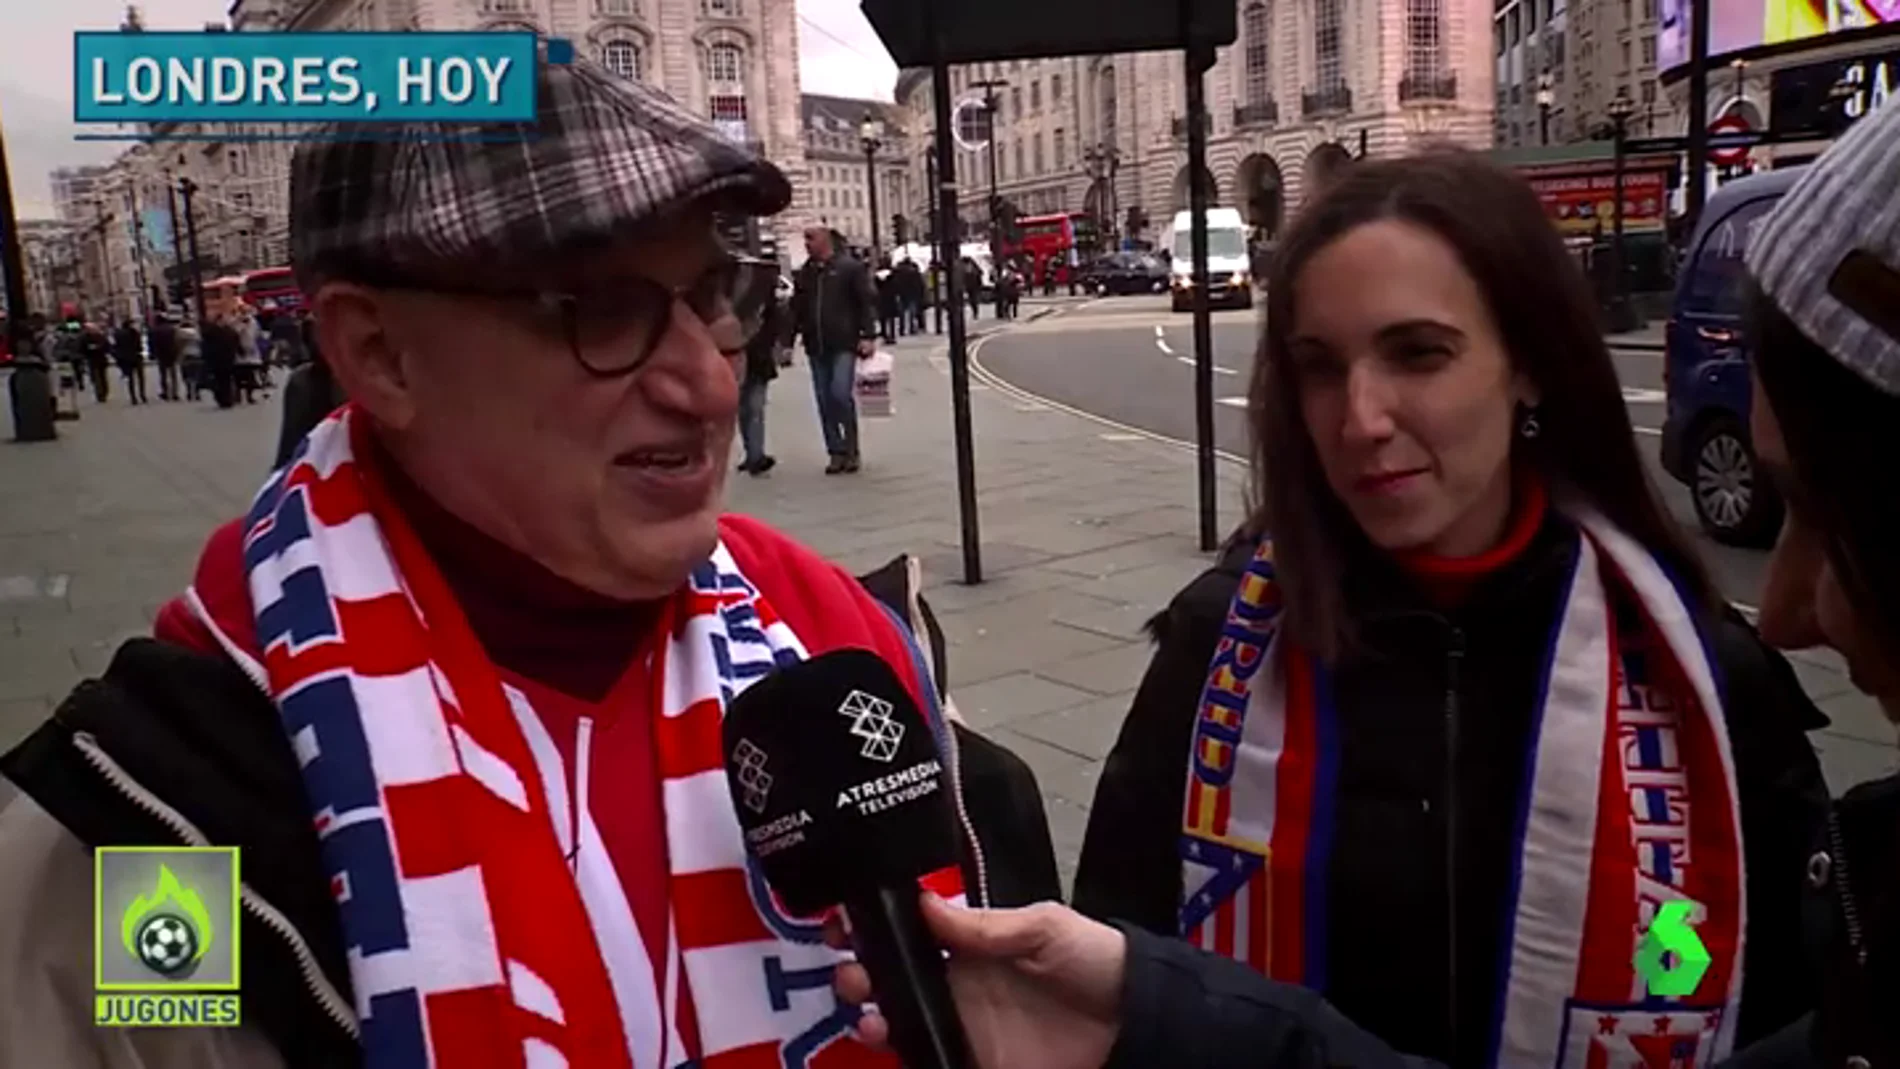 La afición del Atlético ya inunda las calles de Londres: "¿Por qué no vamos a creer?"